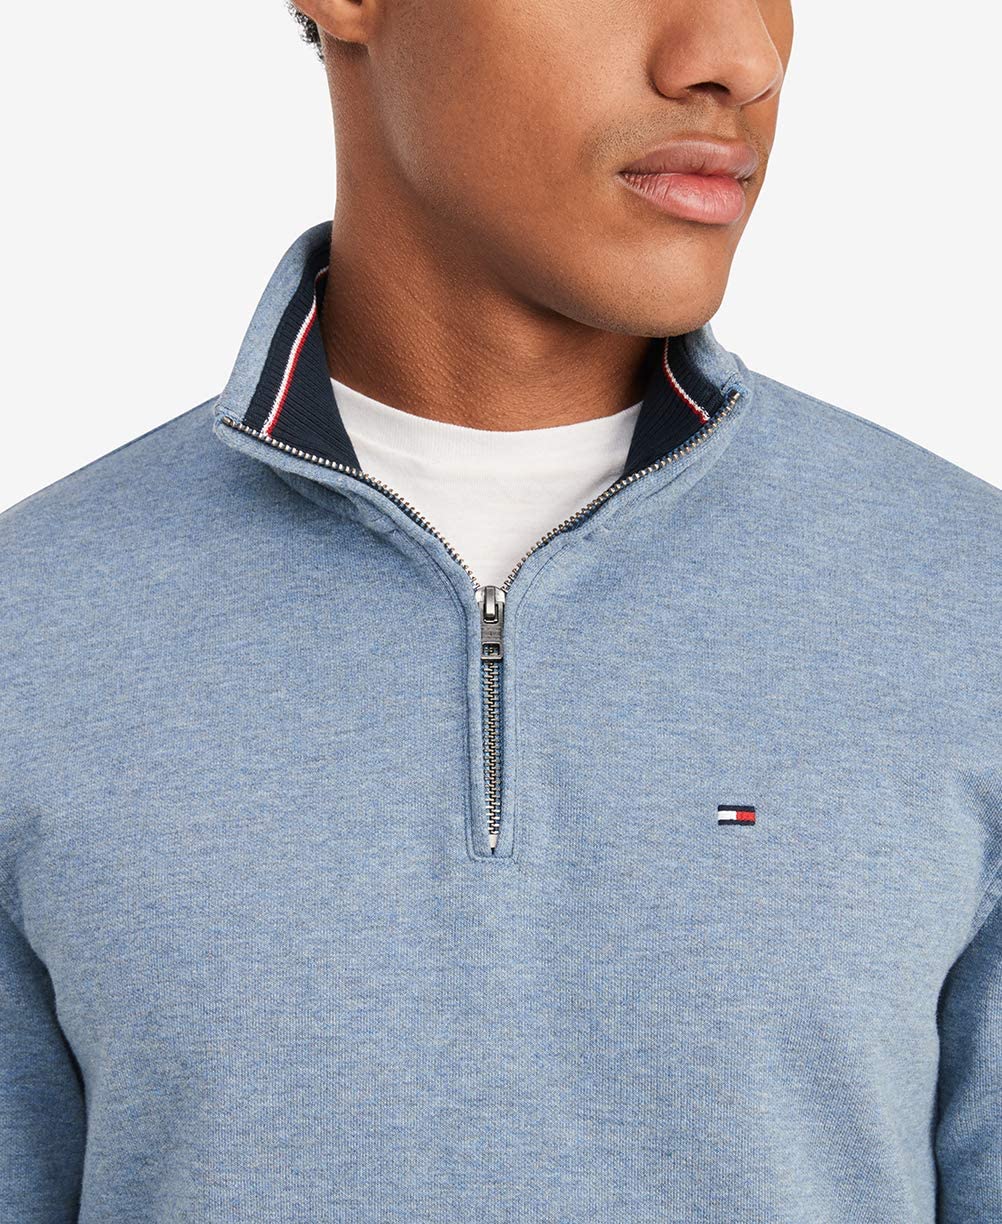 Tommy Hilfiger Men's Long Sleeve Fleece Quarter Zip Pullover Sweatshirt